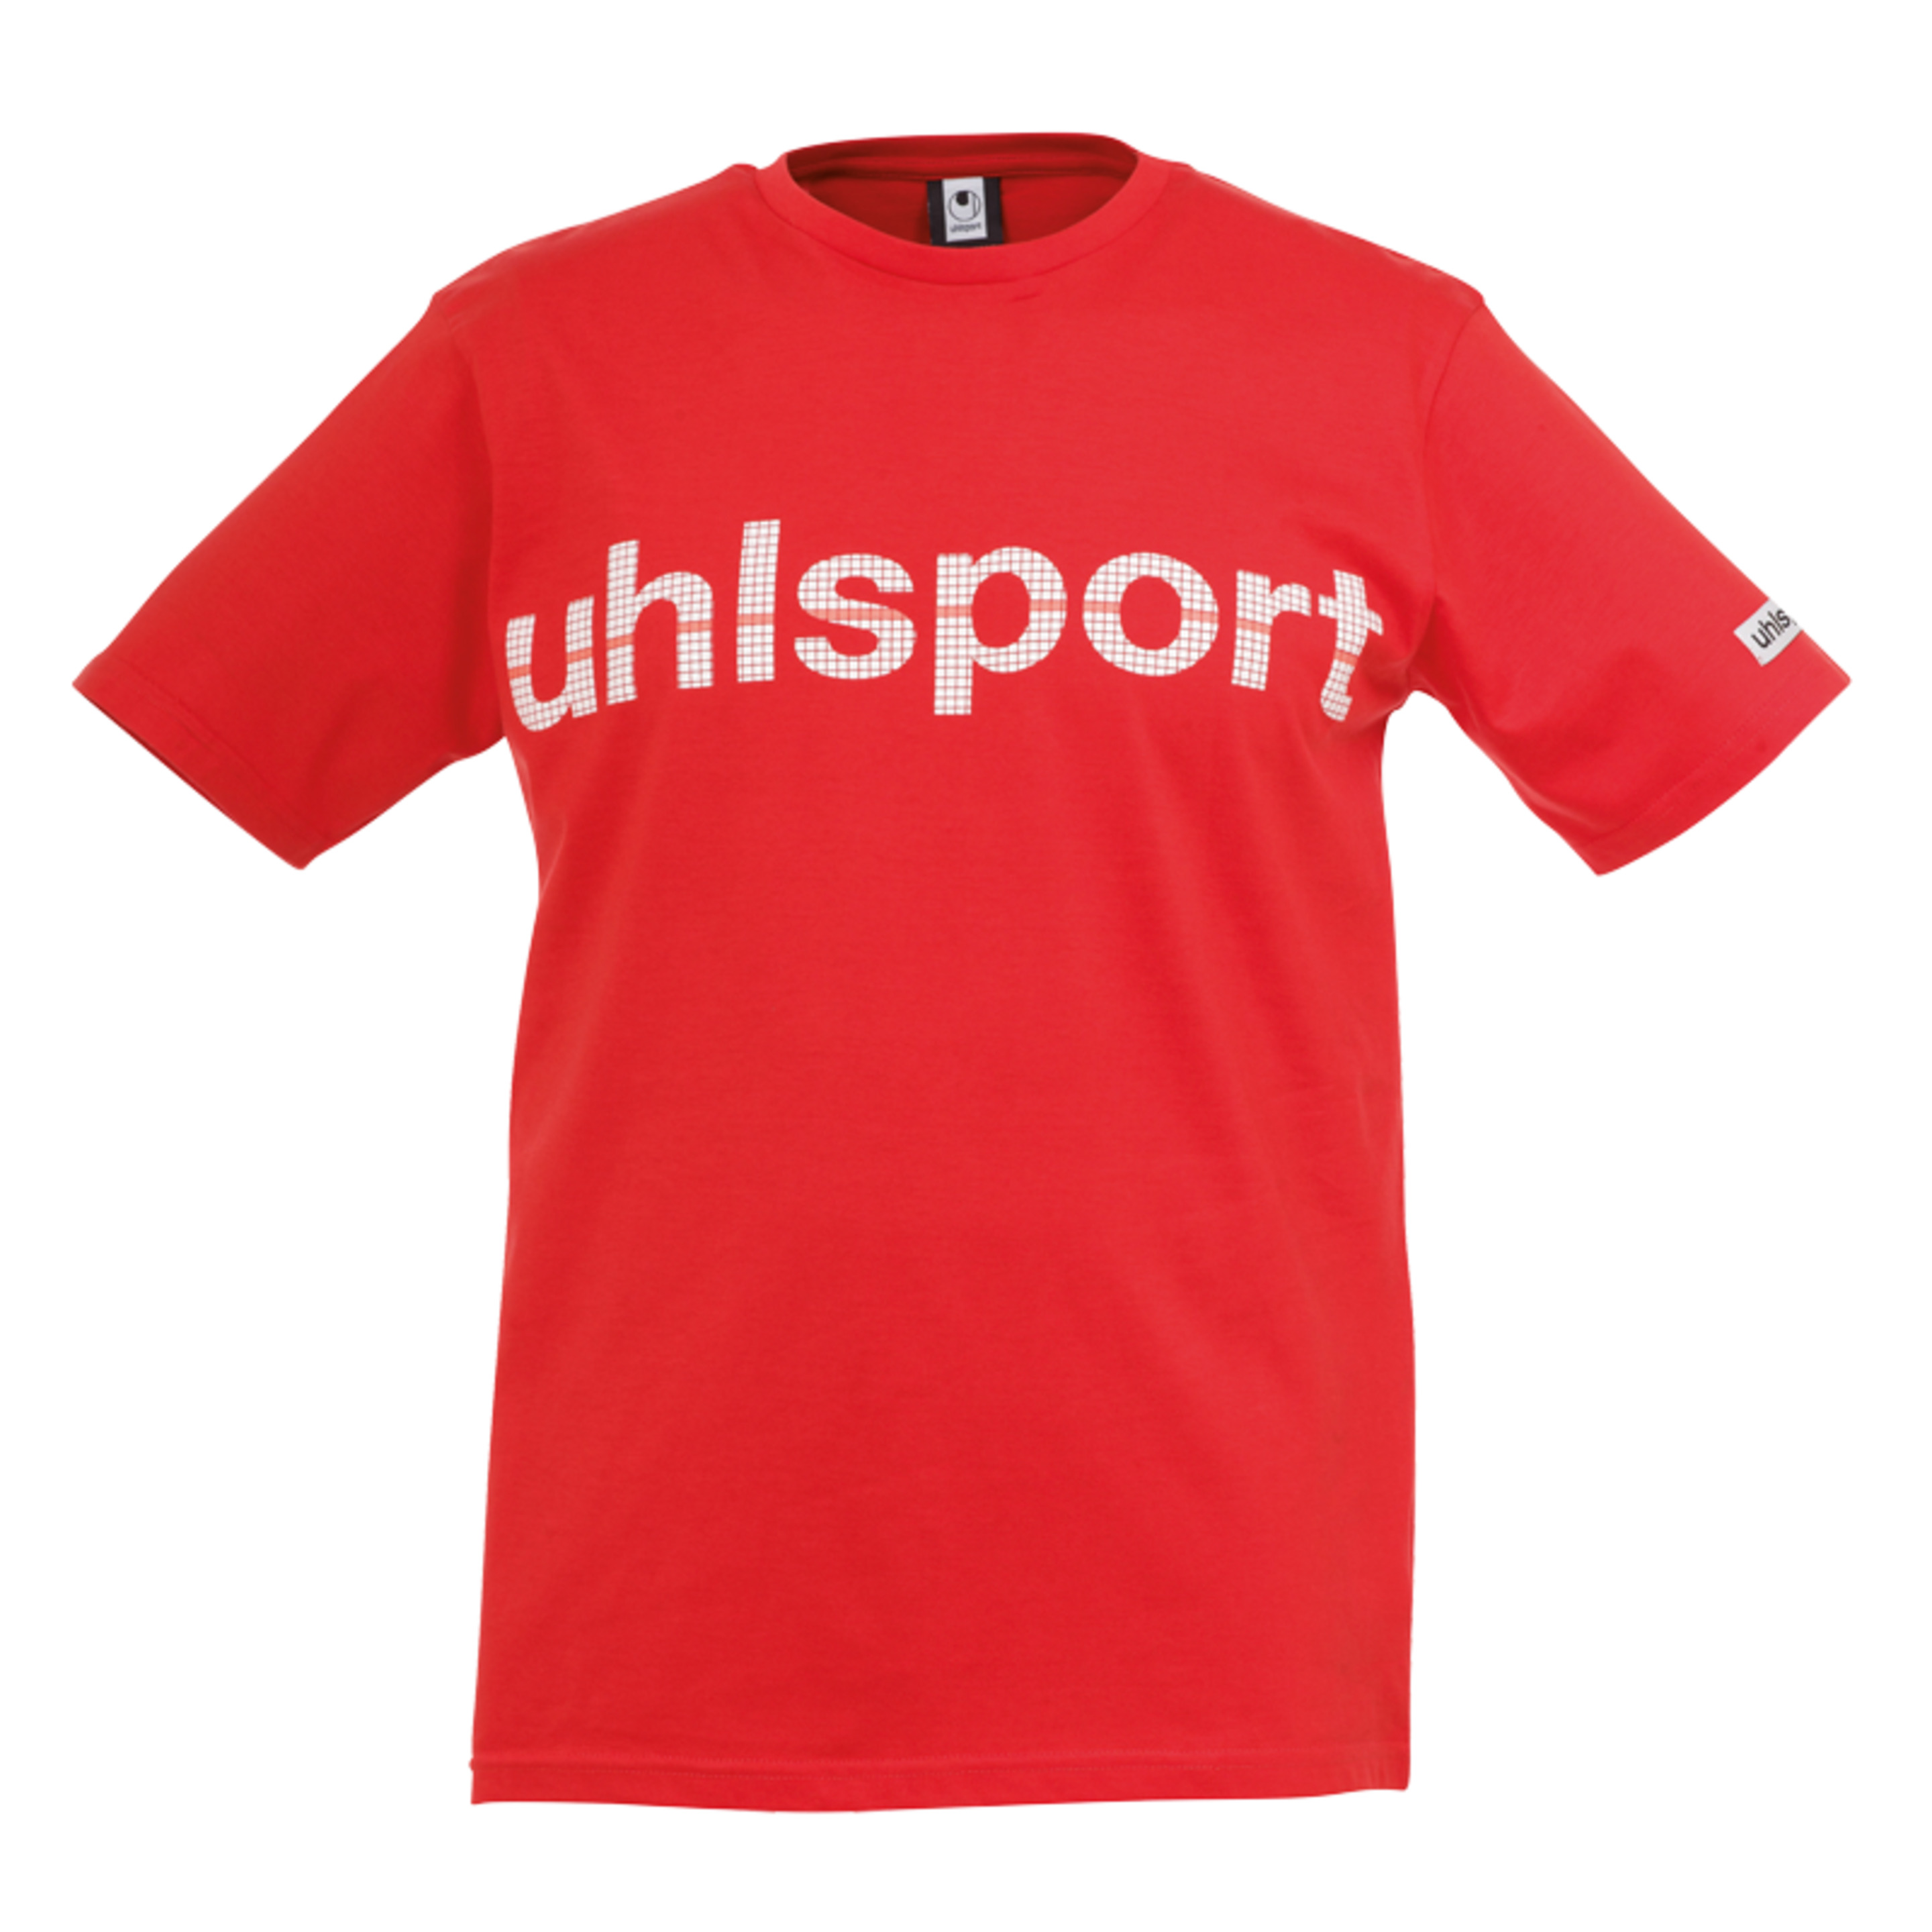 Essential Promo Camiseta Rojo Uhlsport - rojo - 